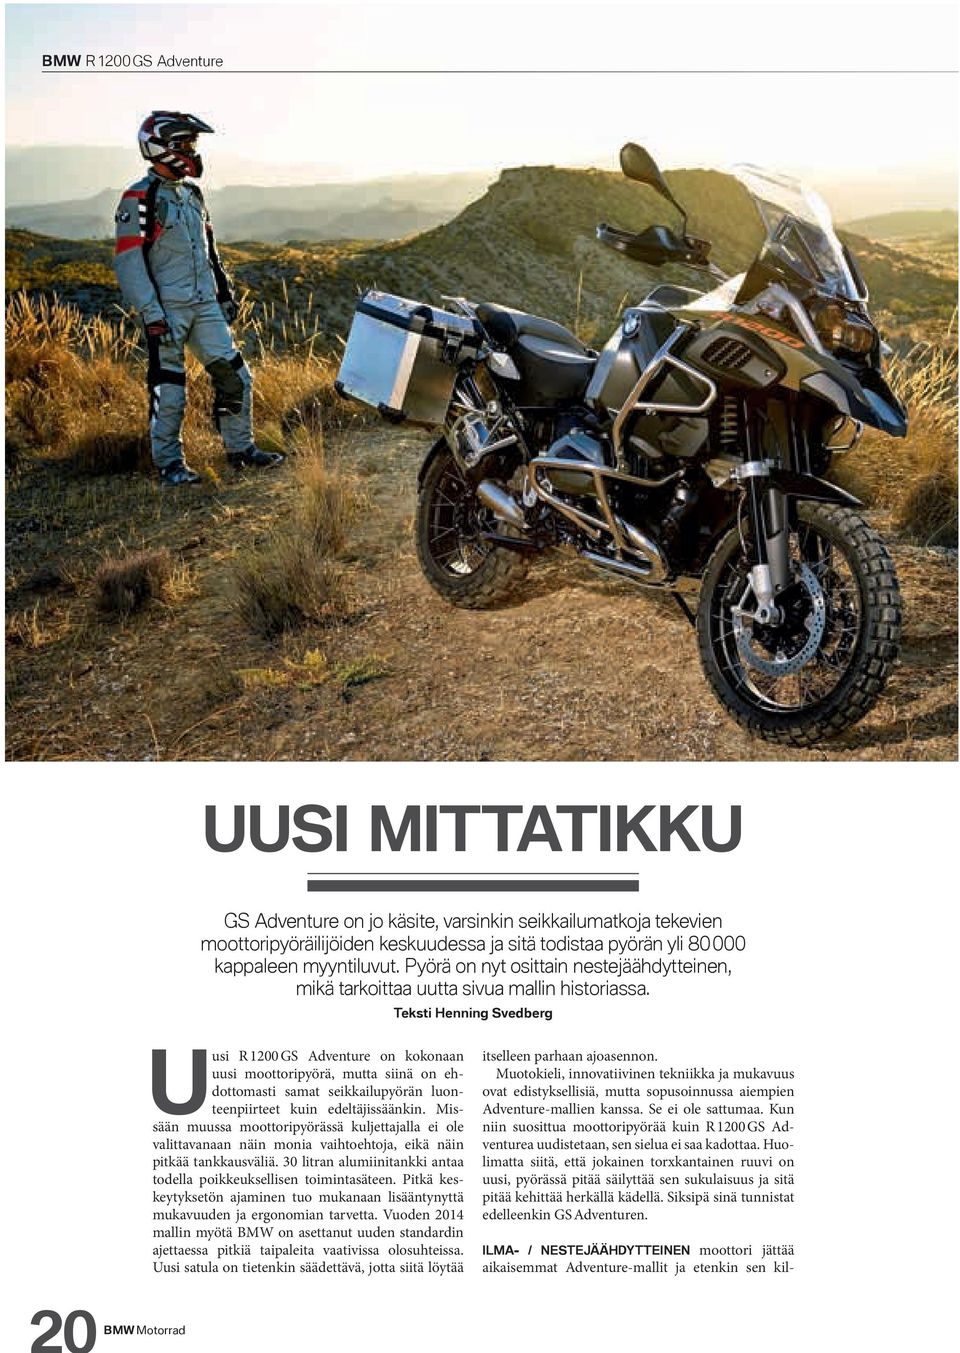 Teksti Henning Svedberg Uusi R 1200 GS Adventure on kokonaan uusi moottoripyörä, mutta siinä on ehdottomasti samat seikkailupyörän luonteenpiirteet kuin edeltäjissäänkin.